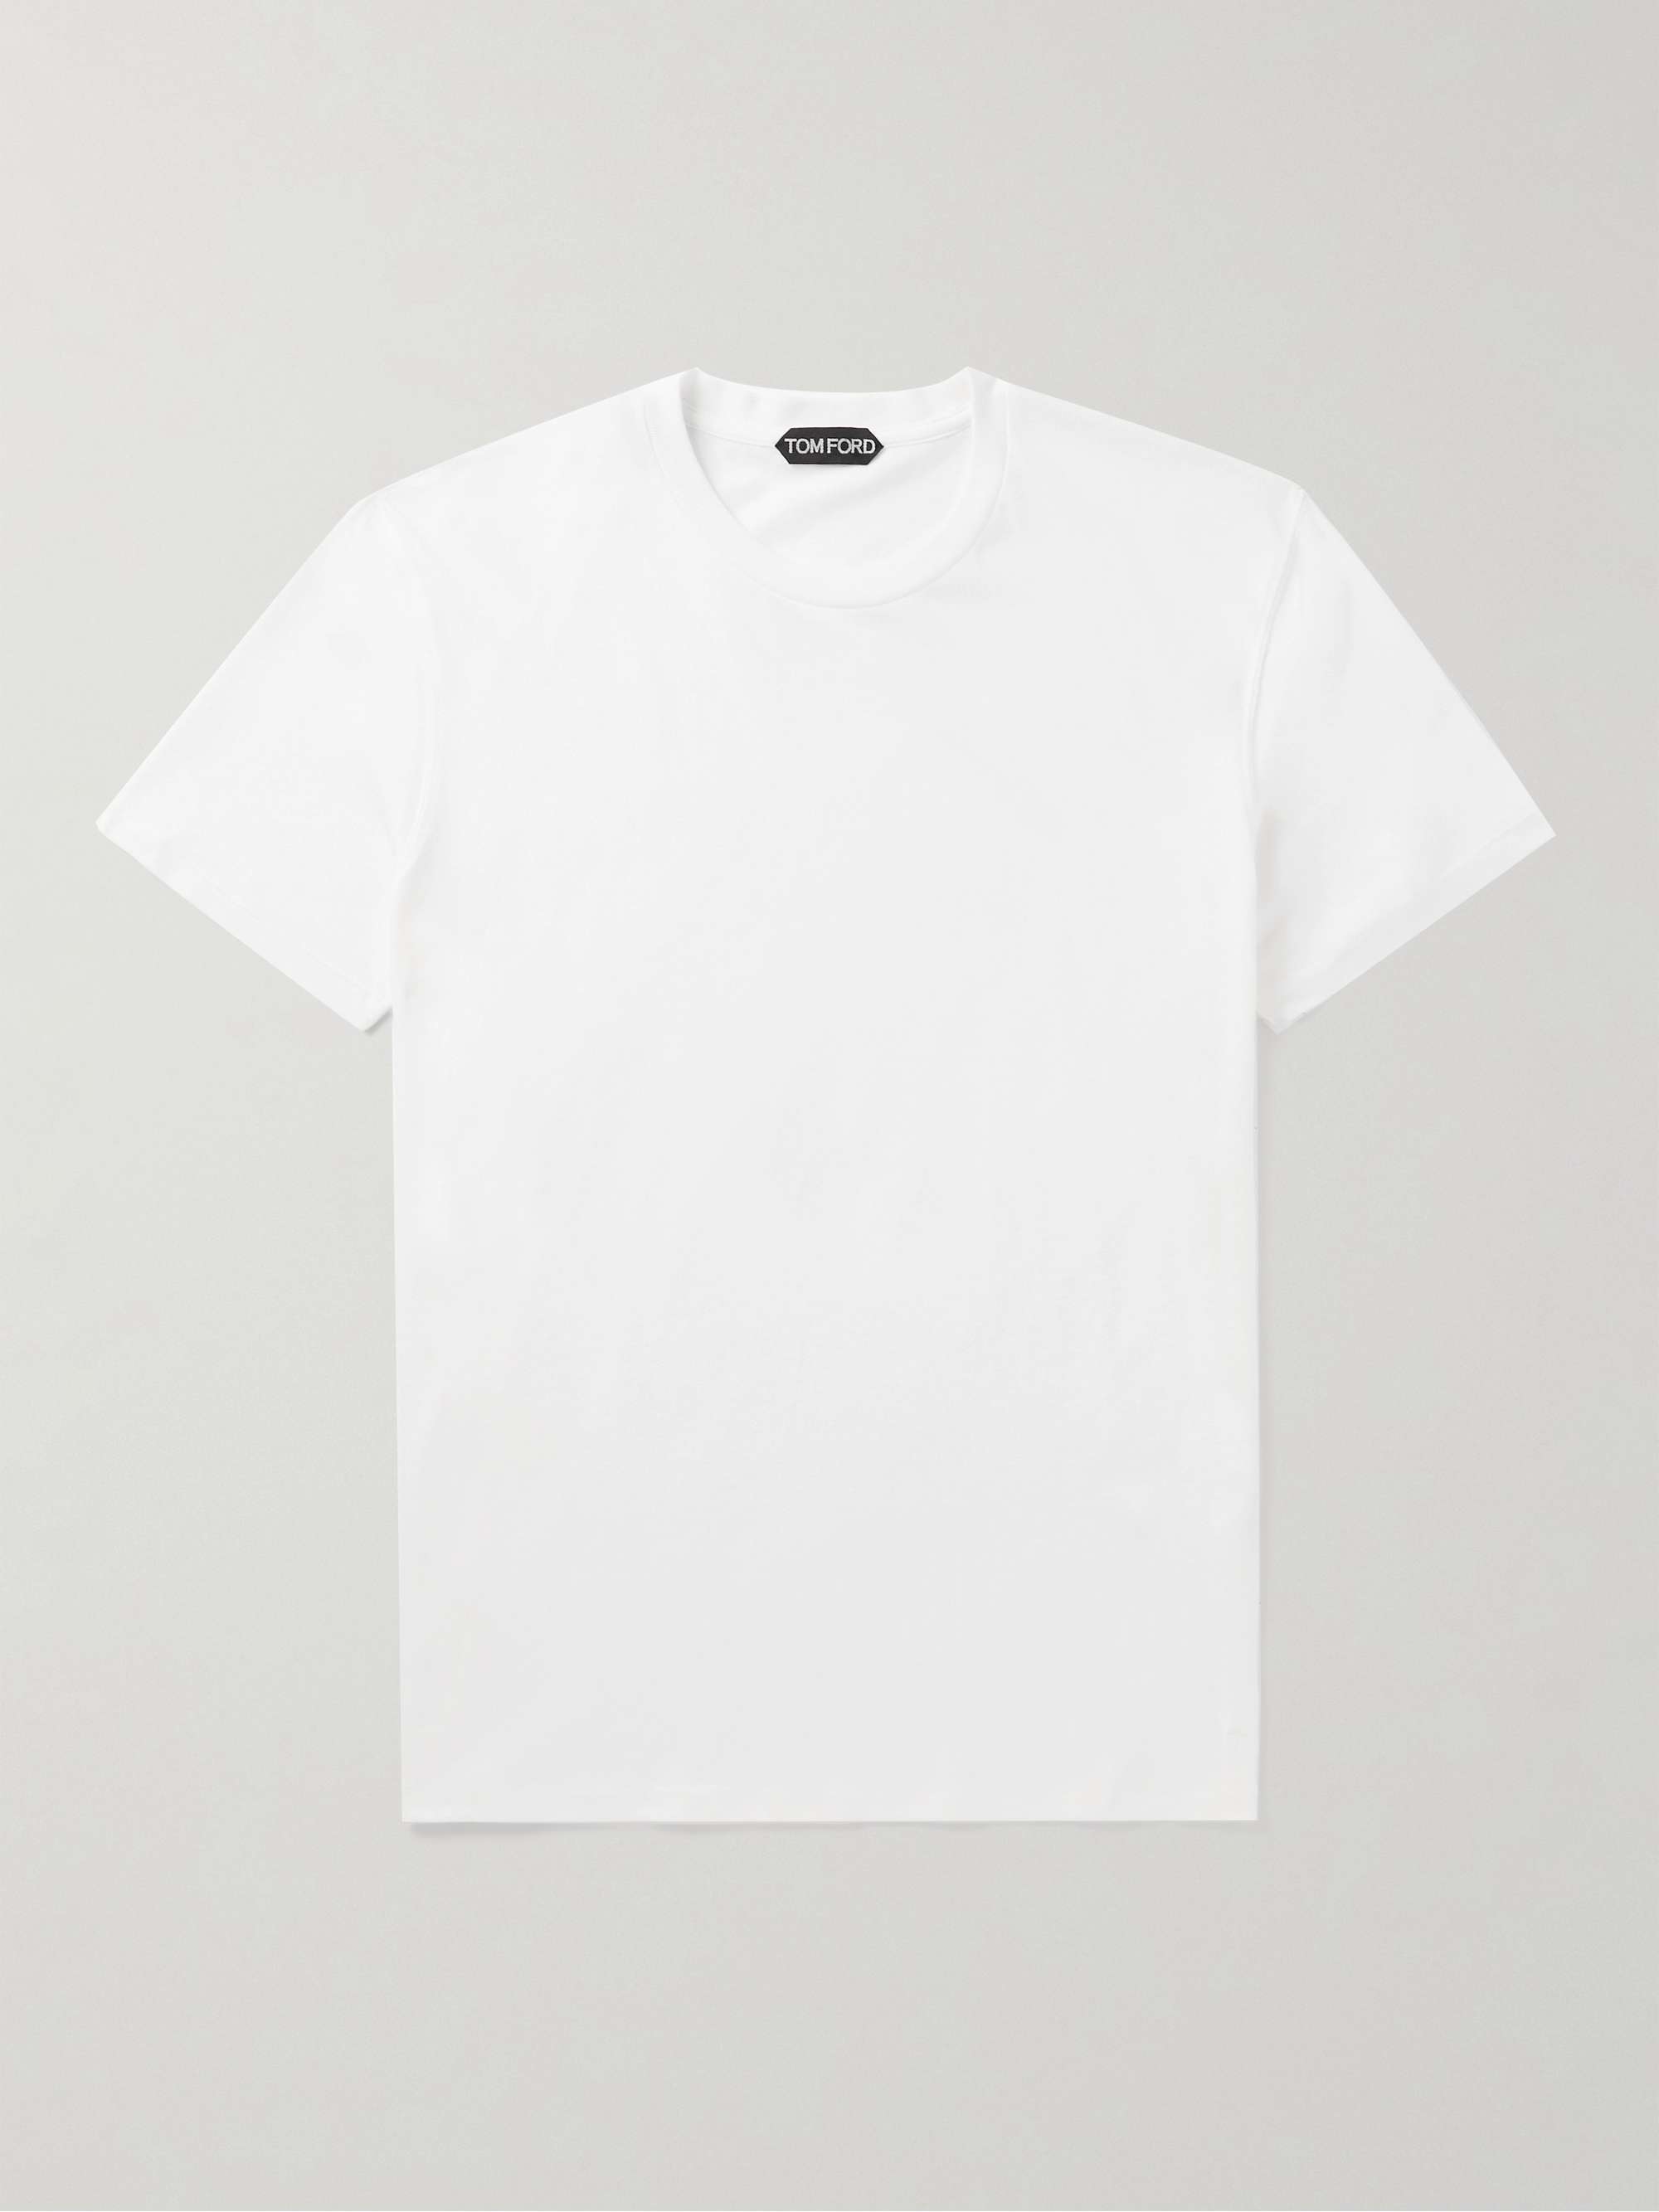 TOM FORD Slim-Fit Cotton-Blend Jersey T-Shirt for Men | MR PORTER